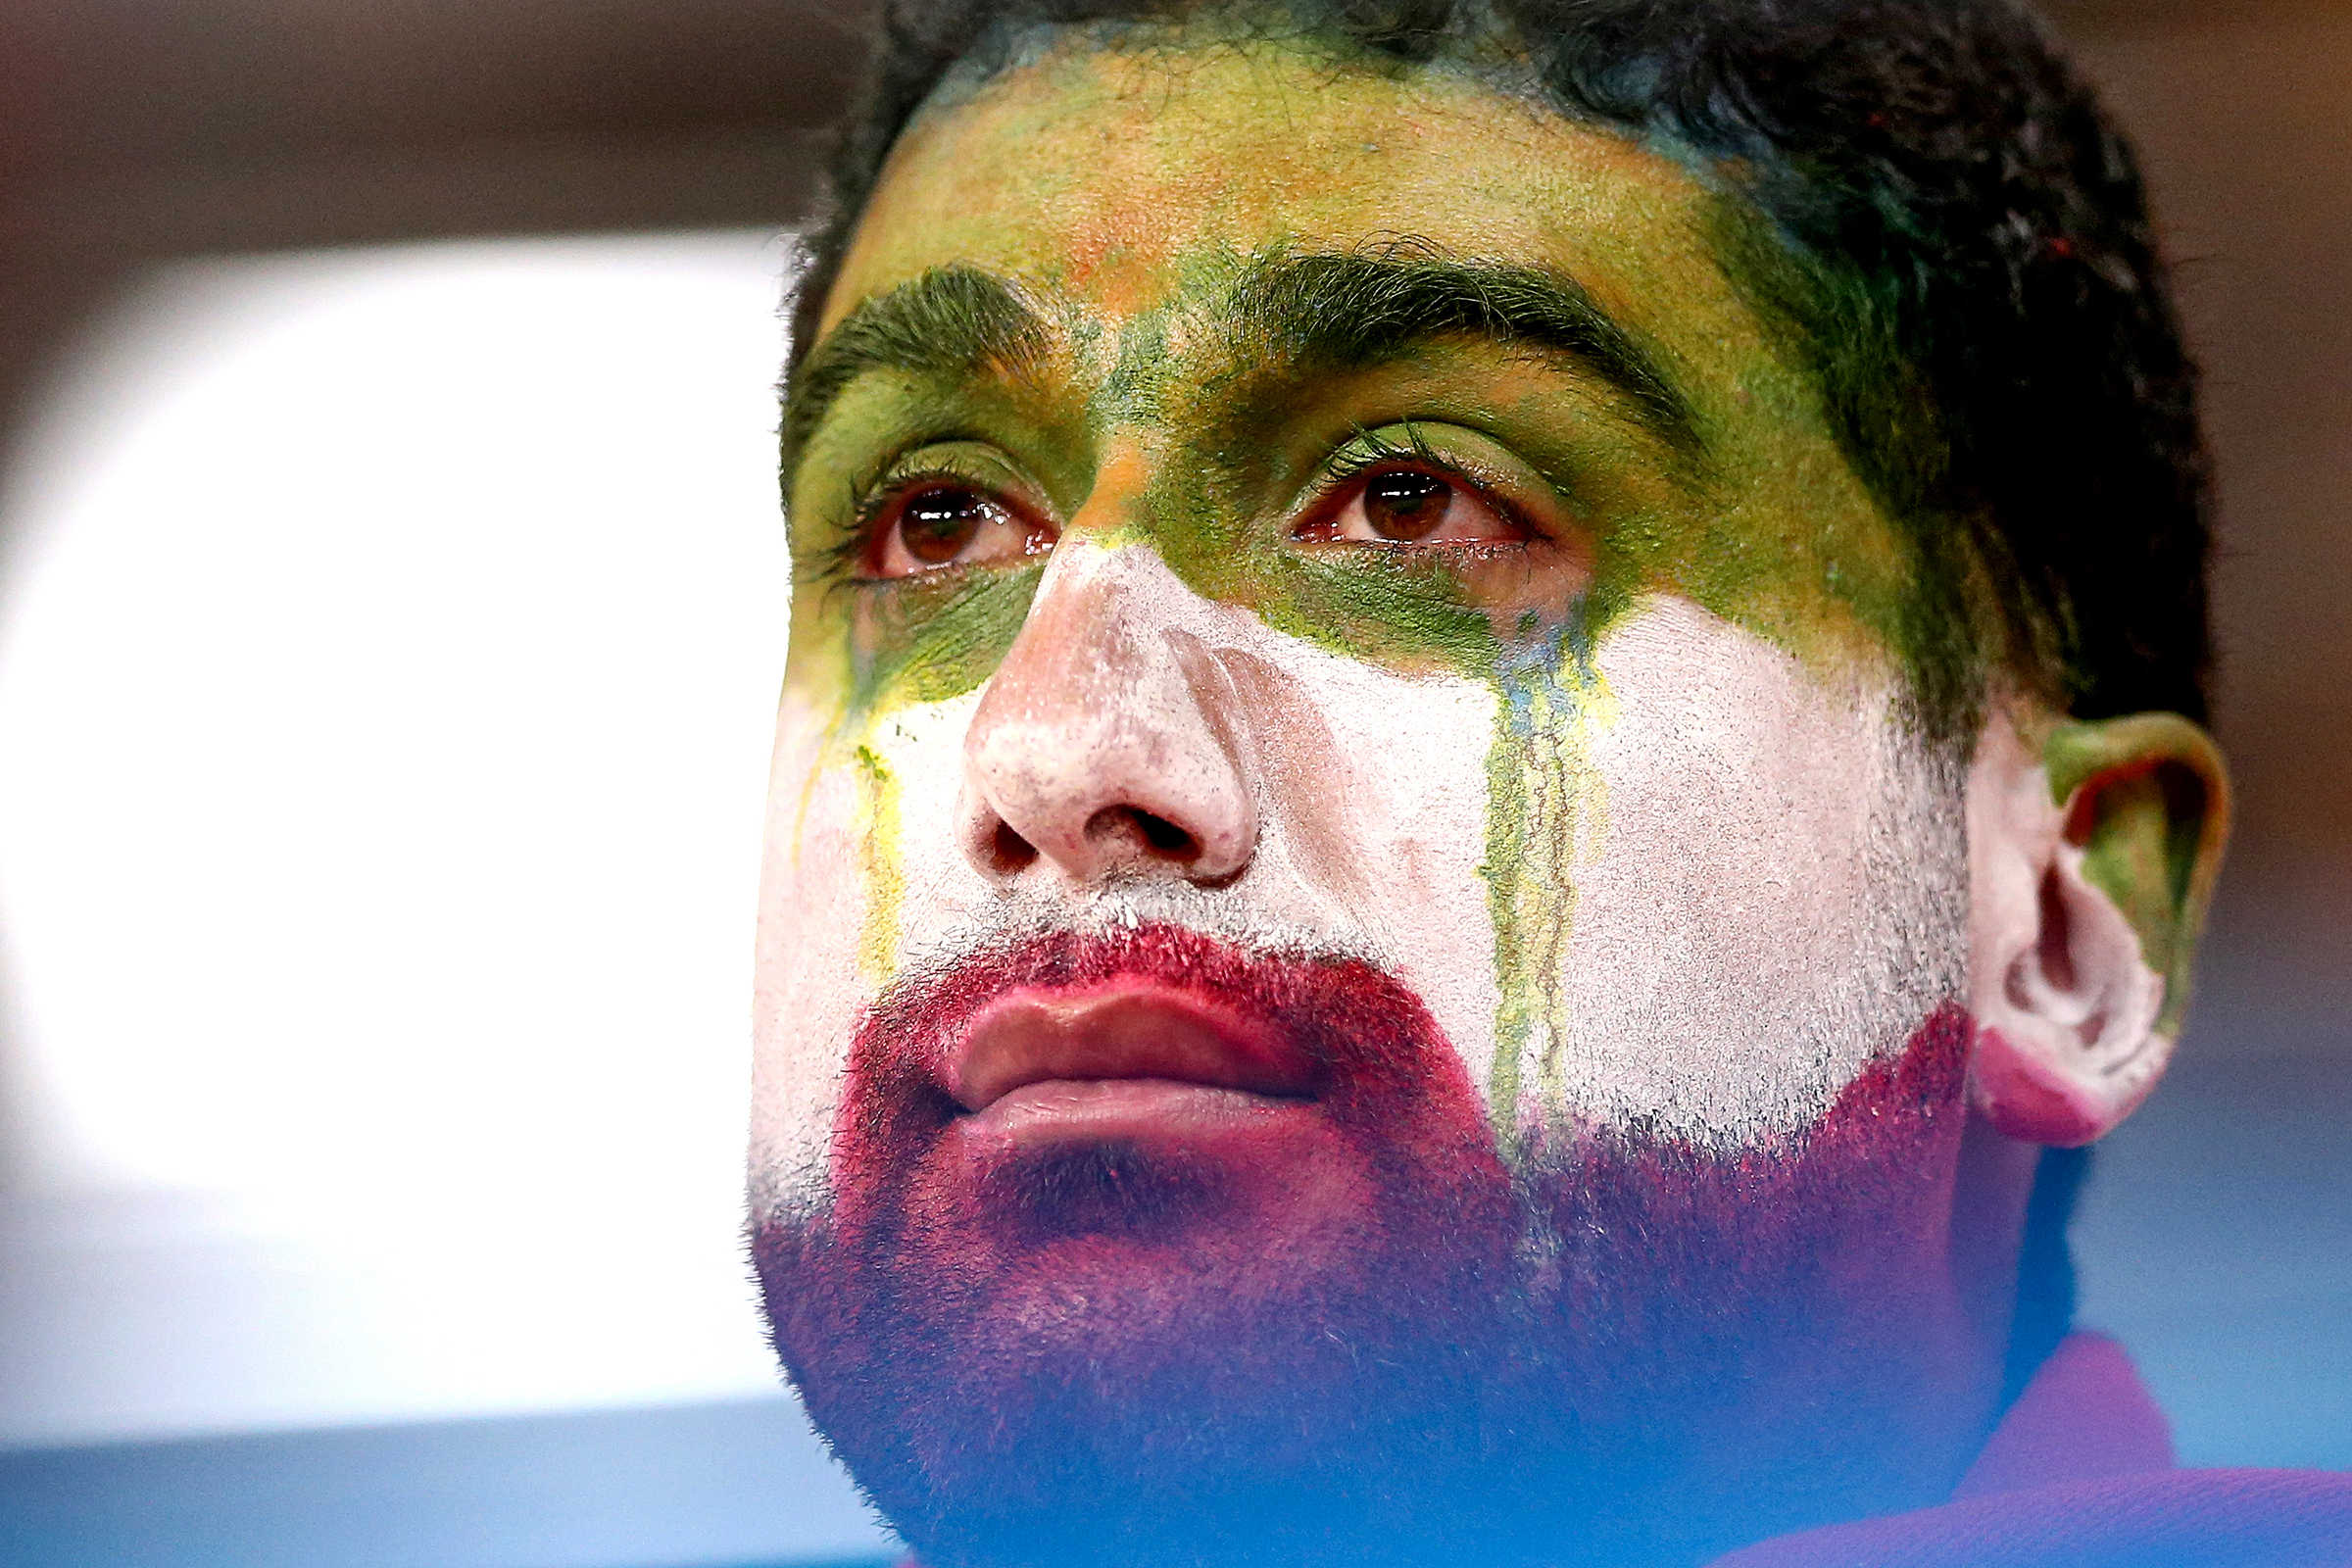 25 июня. Болельщик сборной Ирана после матча Иран &mdash; Португалия, который закончился со счетом 1:1.​
